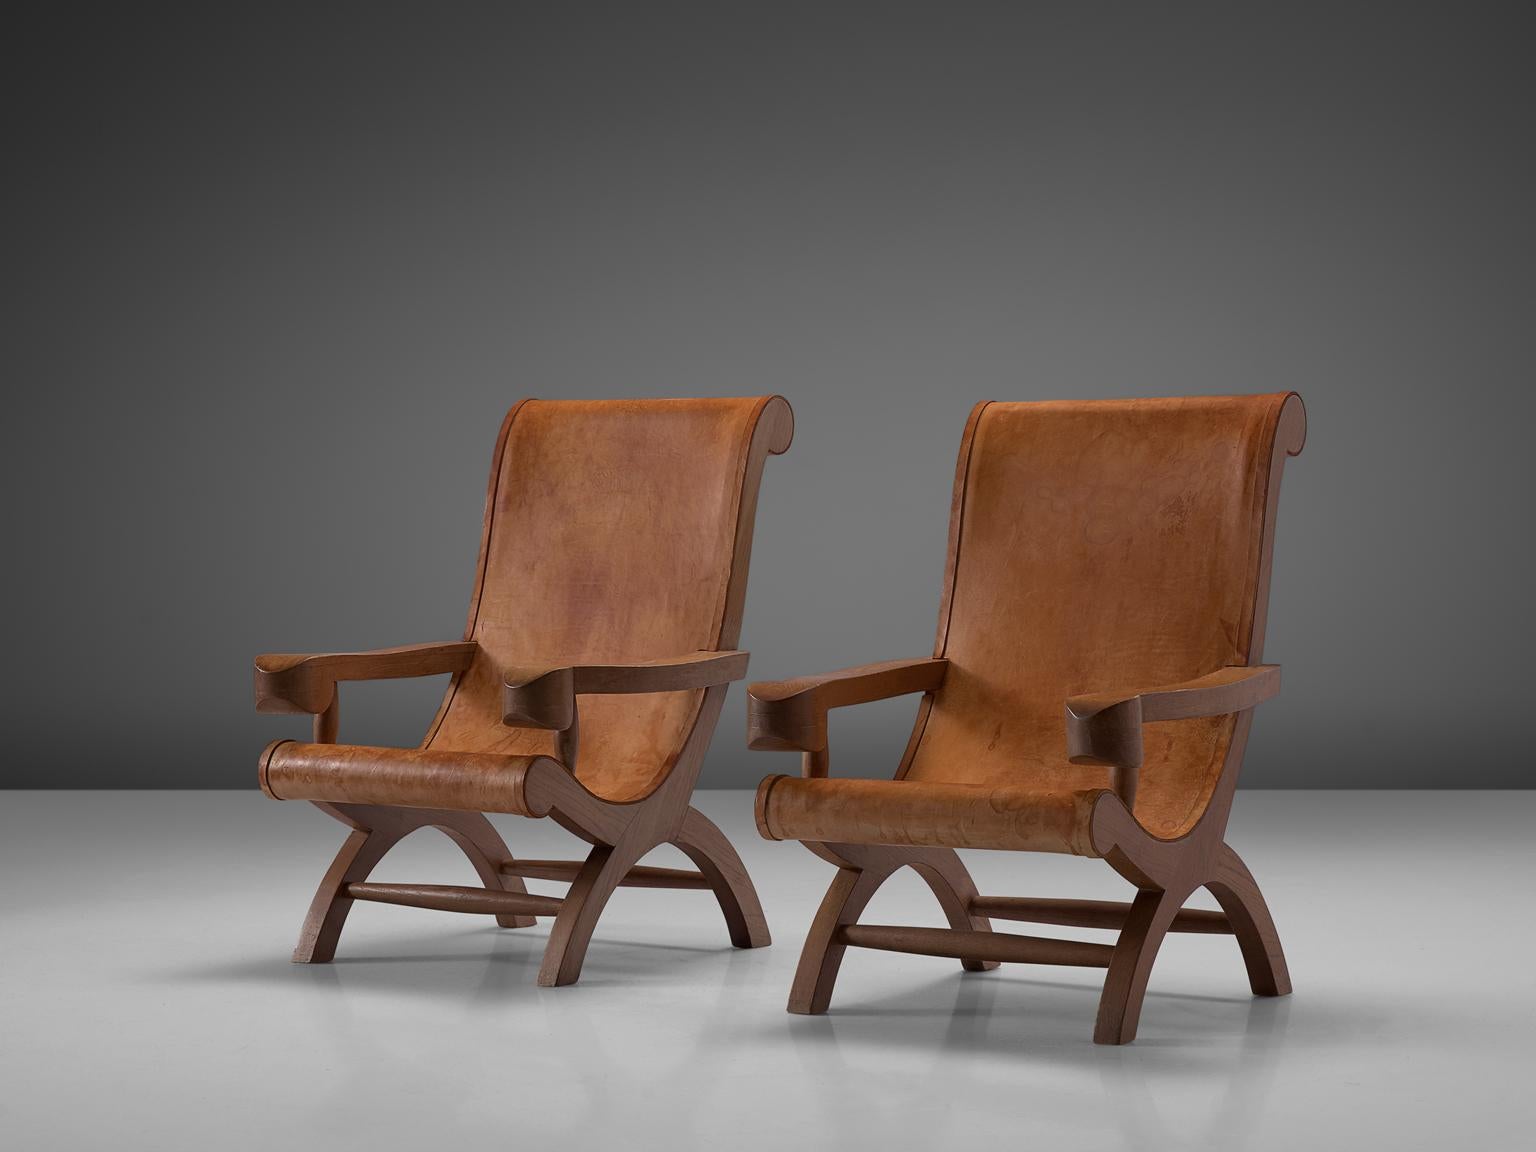 Clara Porset, 2 Sessel 'Butaque', Leder und Zypressenholz, Mexiko, ca. 1947.

Wunderschönes Set von Butaque-Stühlen, entworfen von Clara Porset. Diese Stühle haben ein exotisches Aussehen, da Porset modernes Design mit mexikanischer Handwerkskunst